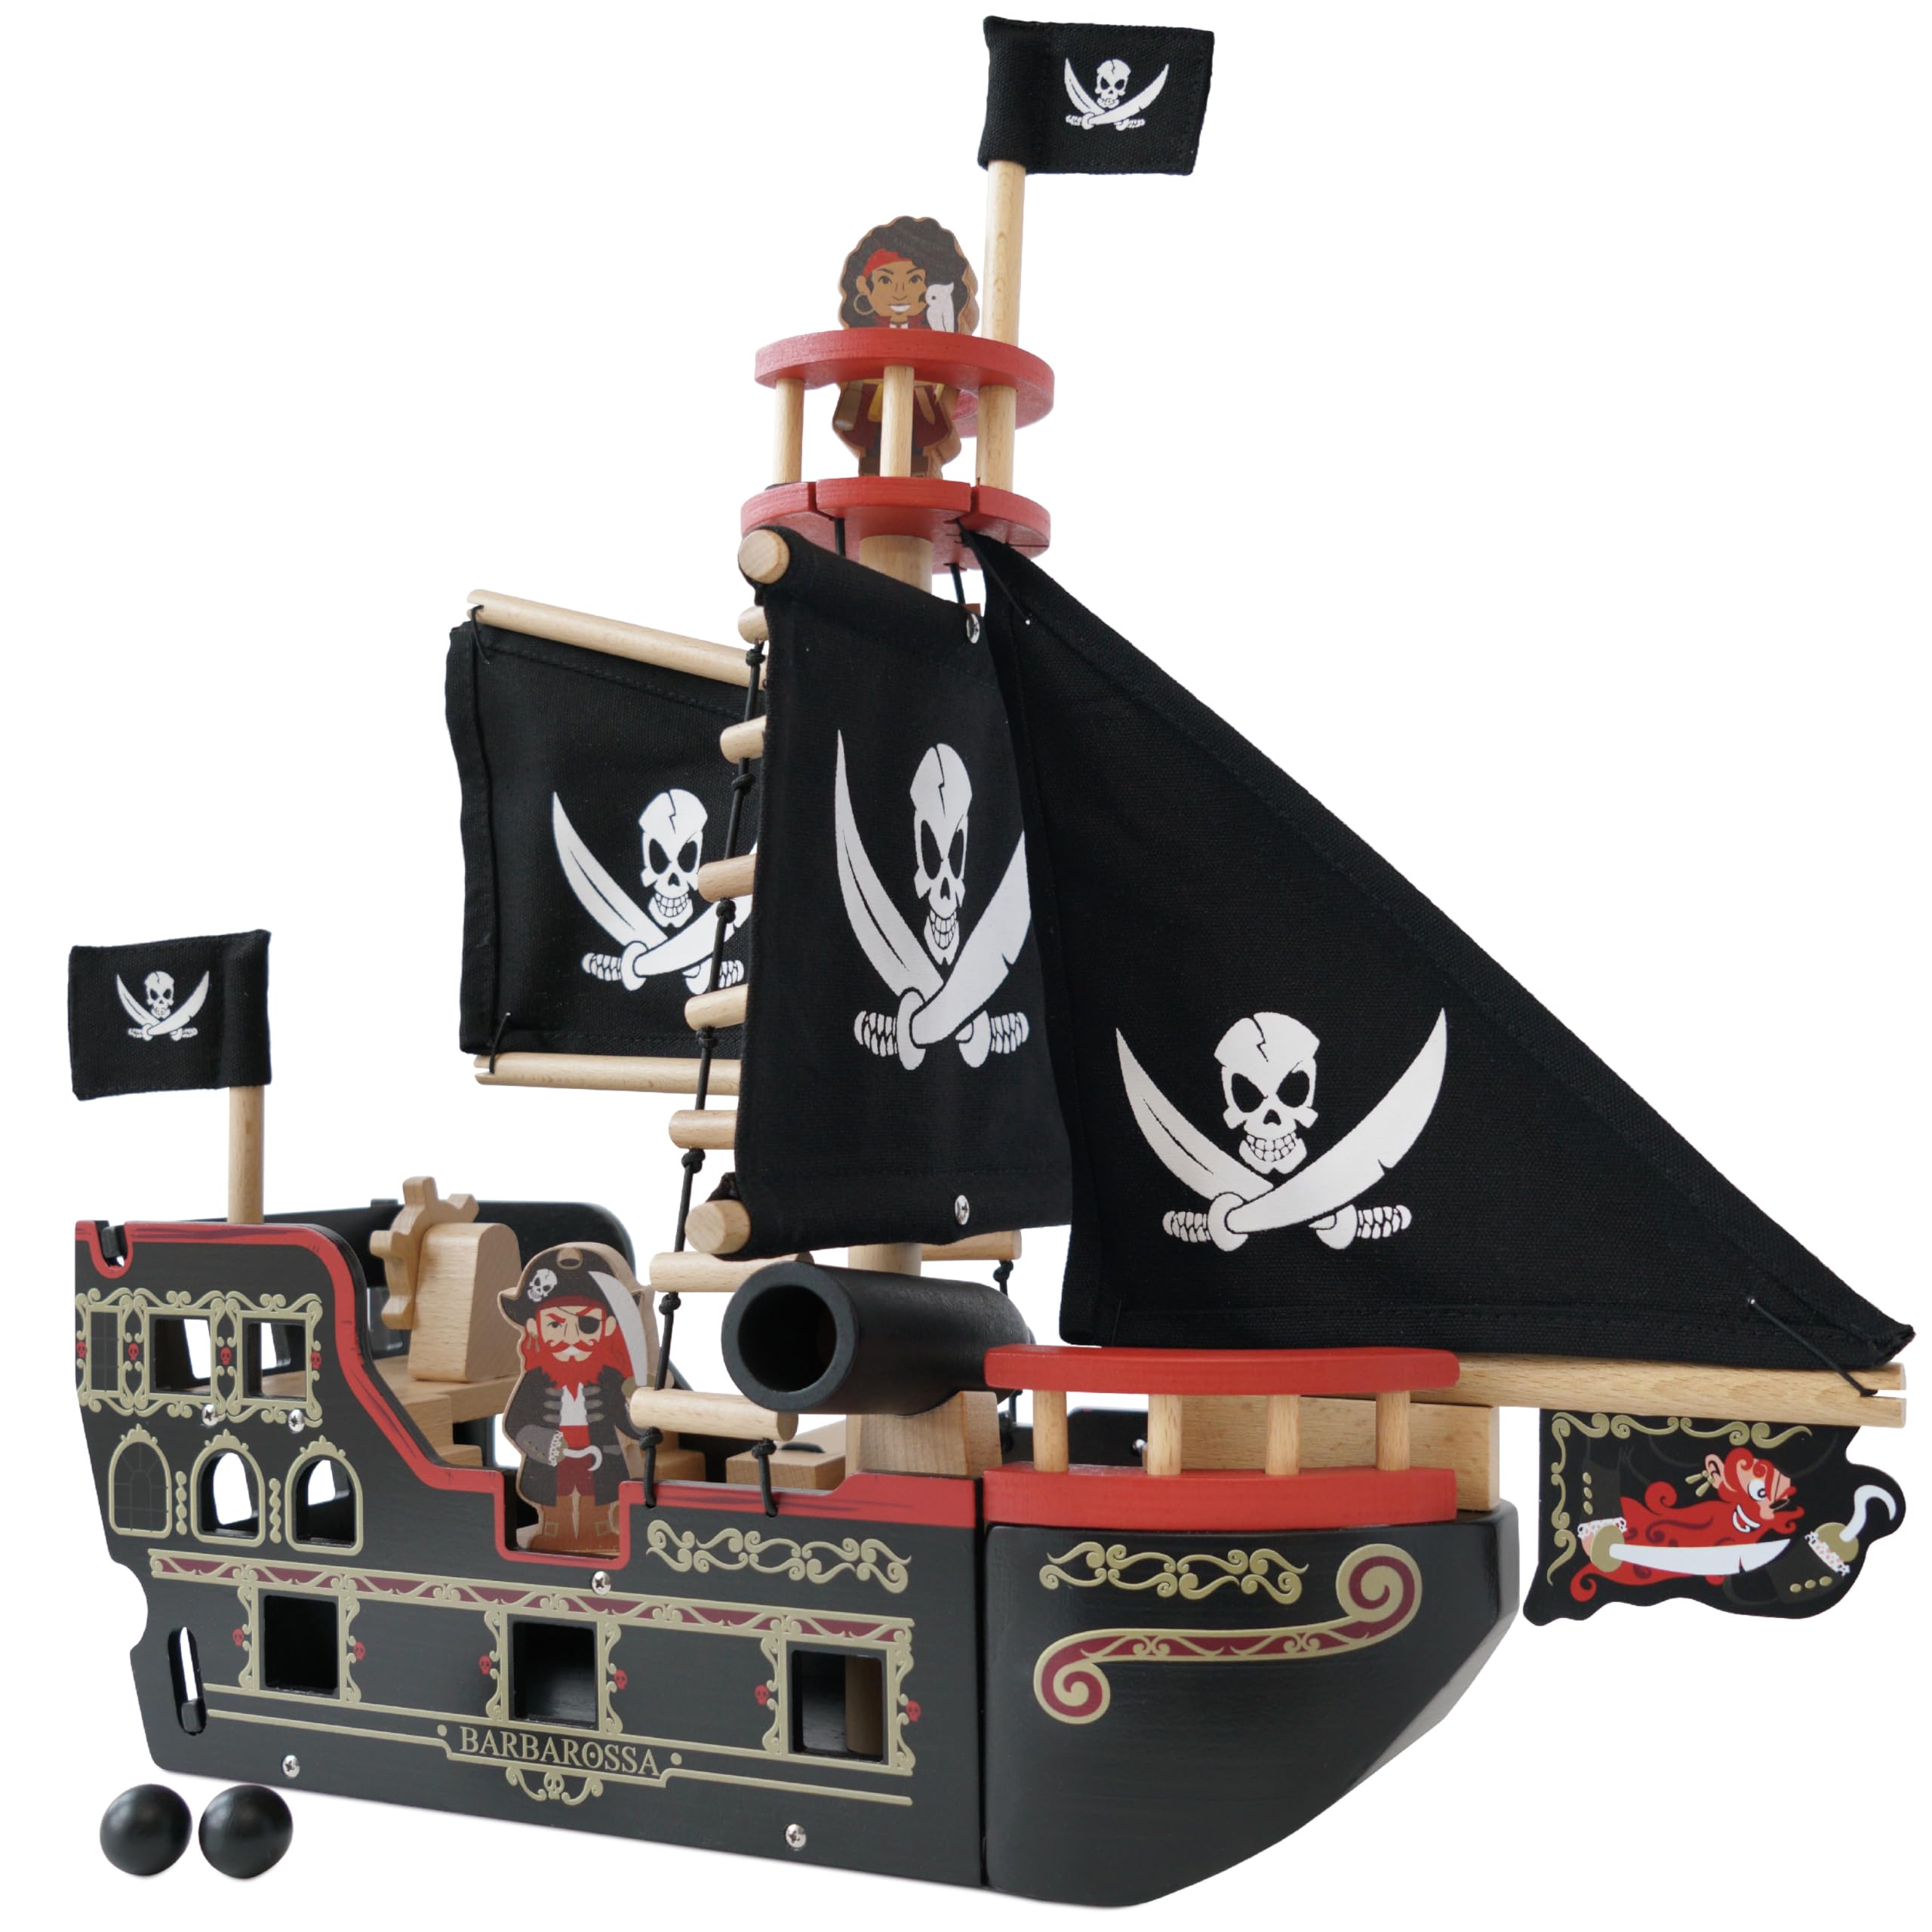 Classique Le Toy Van - TV246 - Piraten-Galeone-Holzspiel 3 Jahre, Barbarossas Piratenschiff, 2 Piraten inklusive, leuchtet im Dunkeln, 48 x 24 x 49 cm, ökologische Montessori-Spiele W3dZ8vjmk Haute Quaity